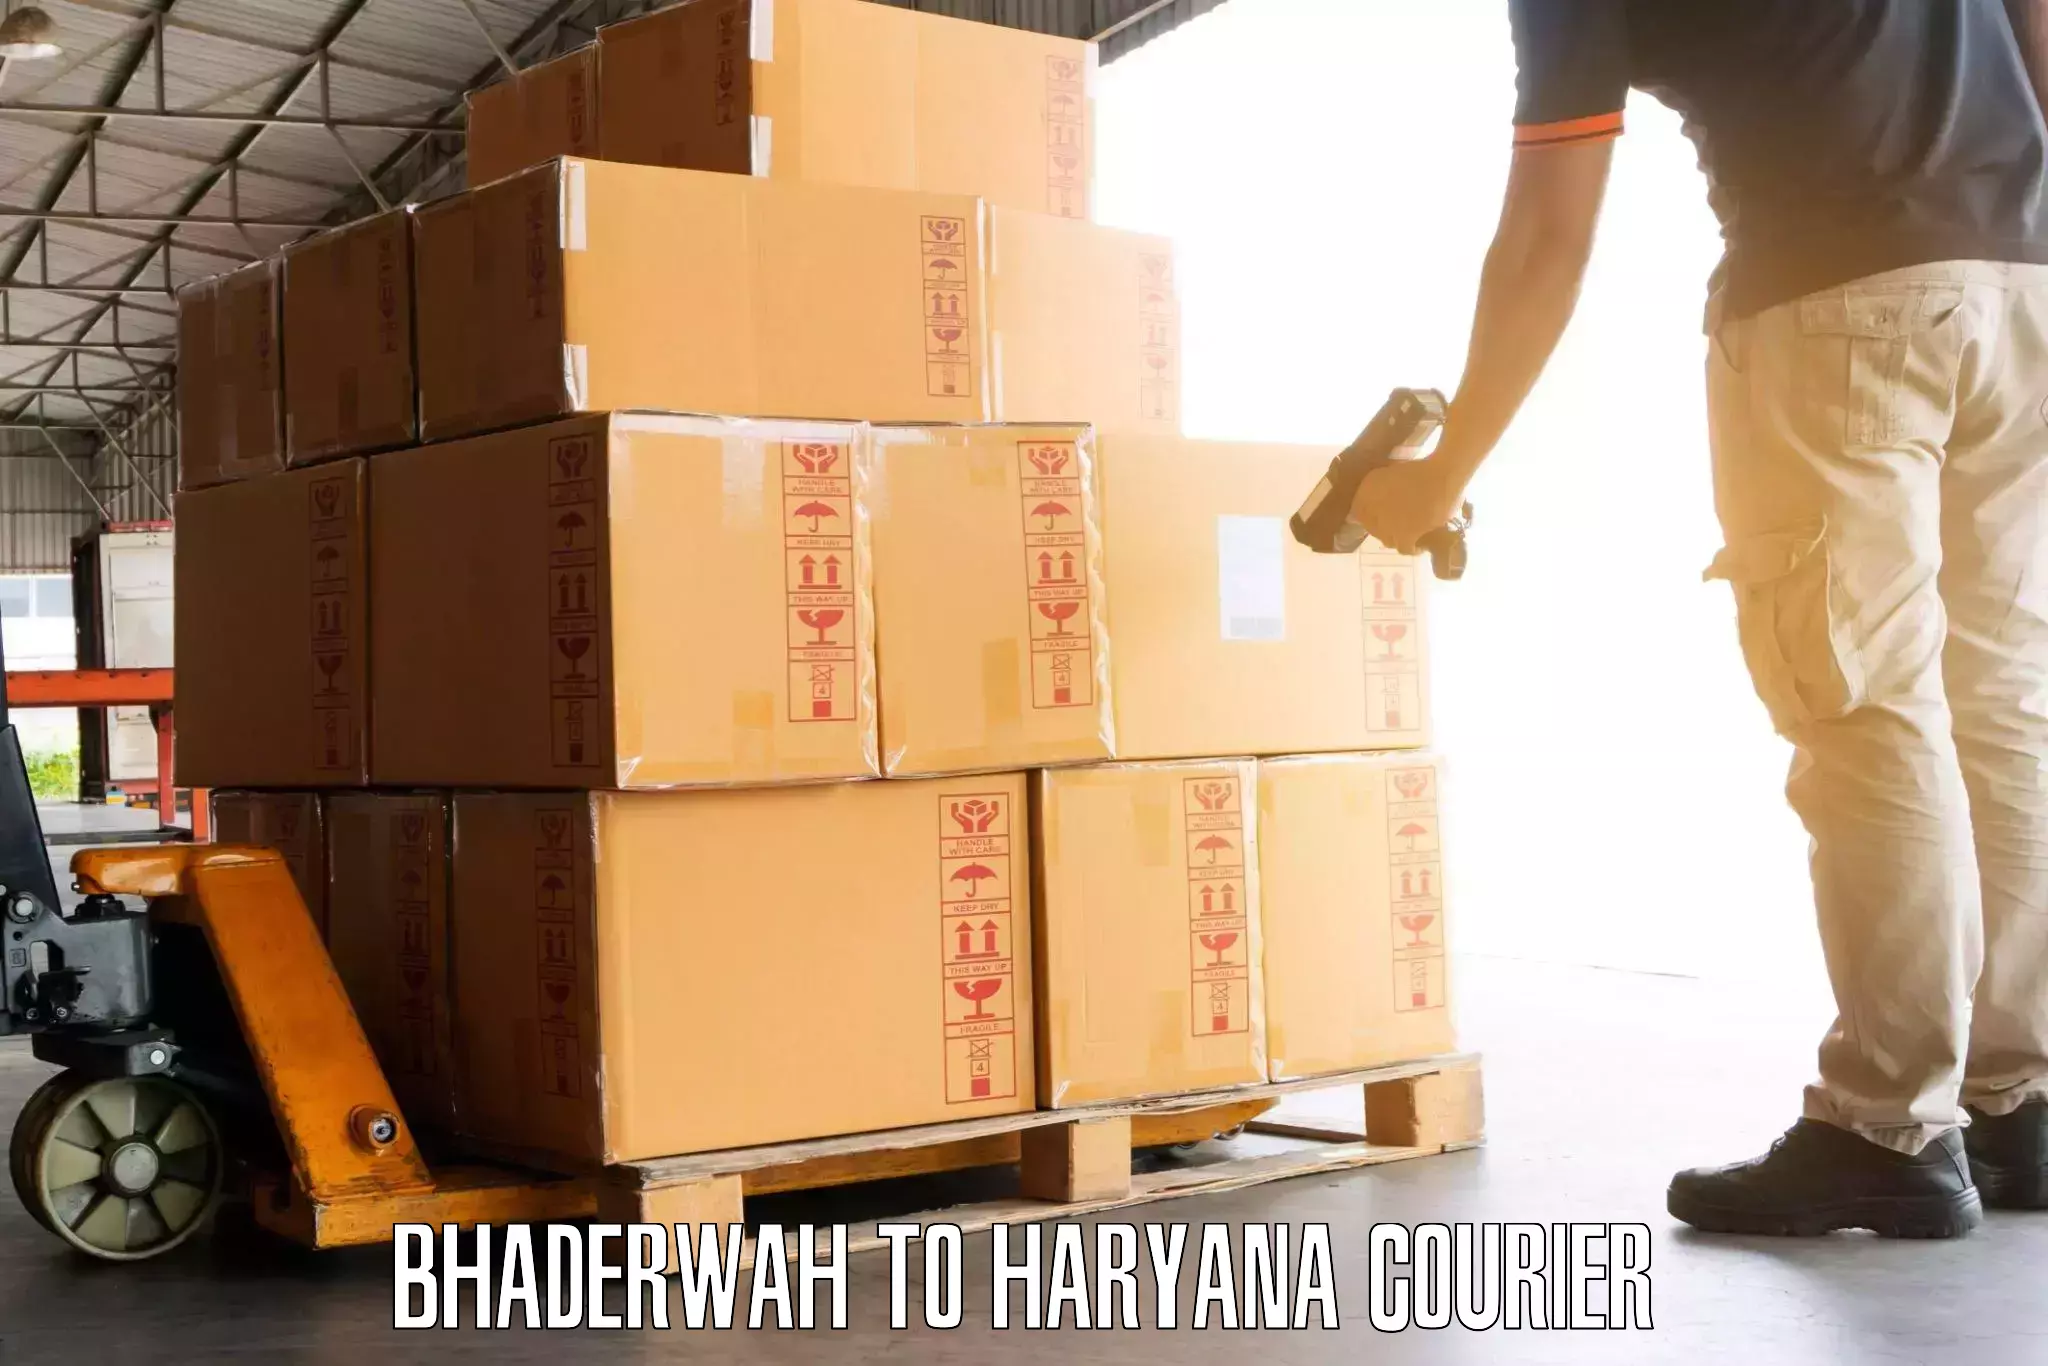 Door-to-door baggage service Bhaderwah to Bhiwani